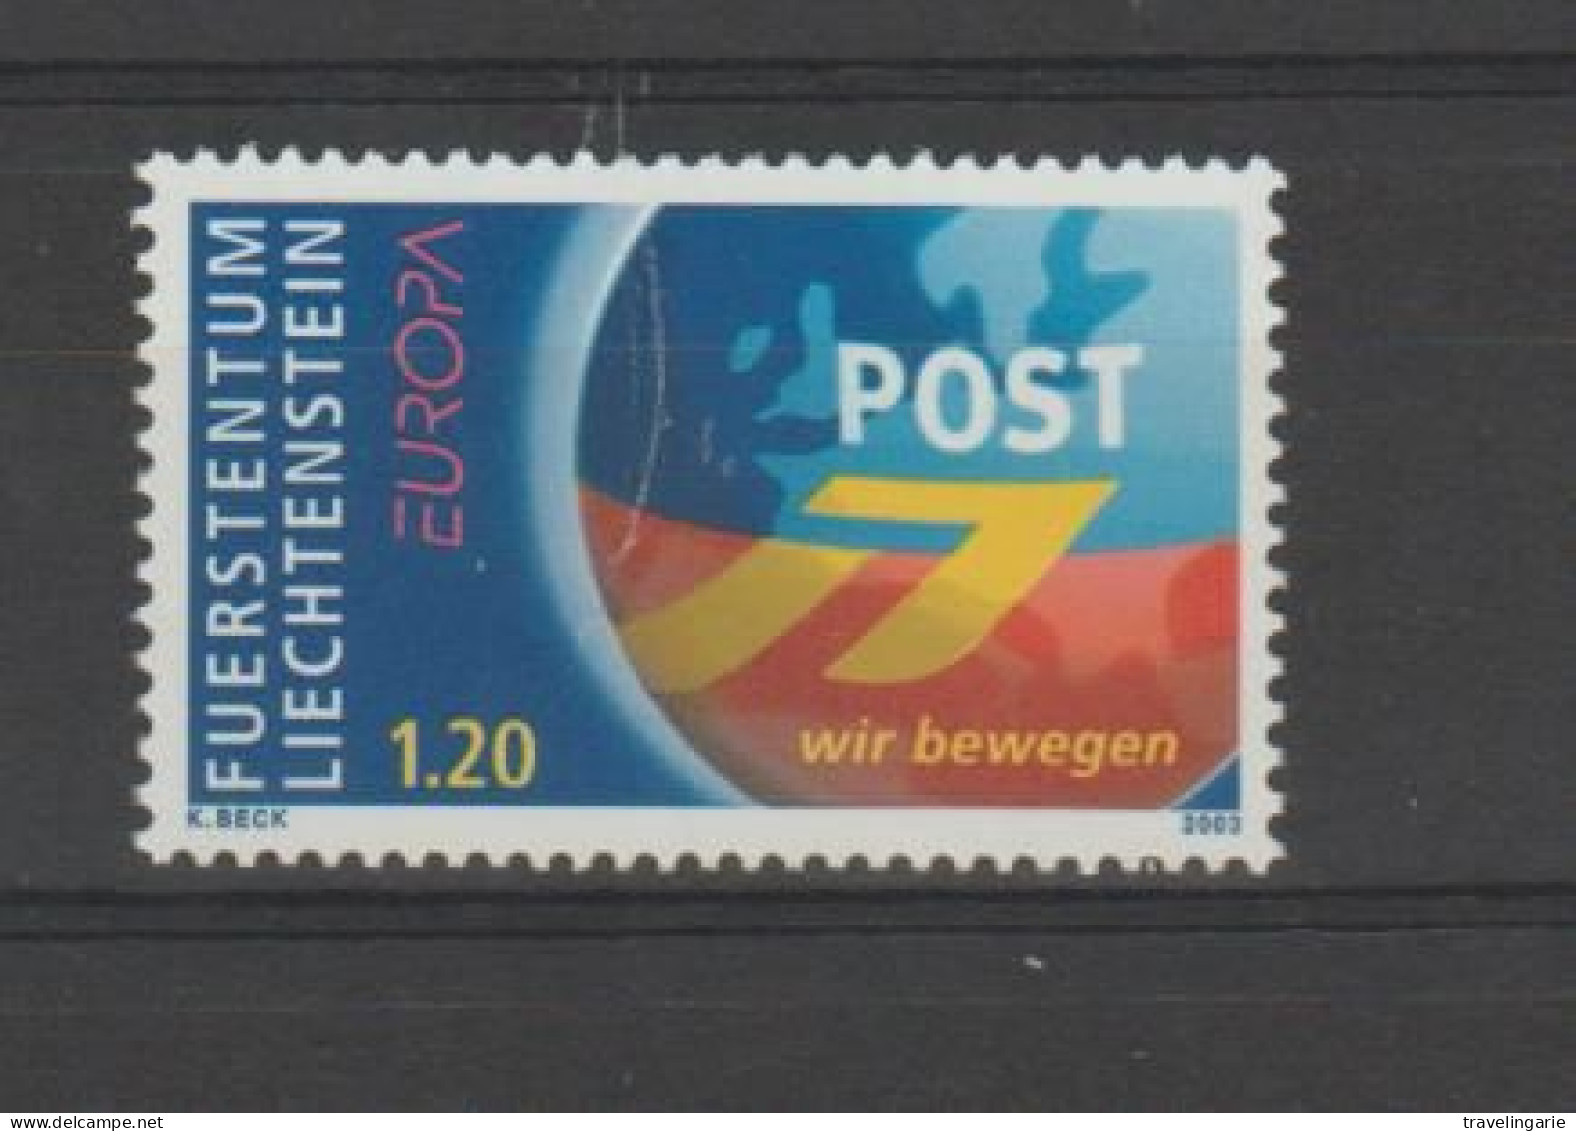 Liechtenstein 2003 Europa Cept - Poster Art ** MNH - Unused Stamps